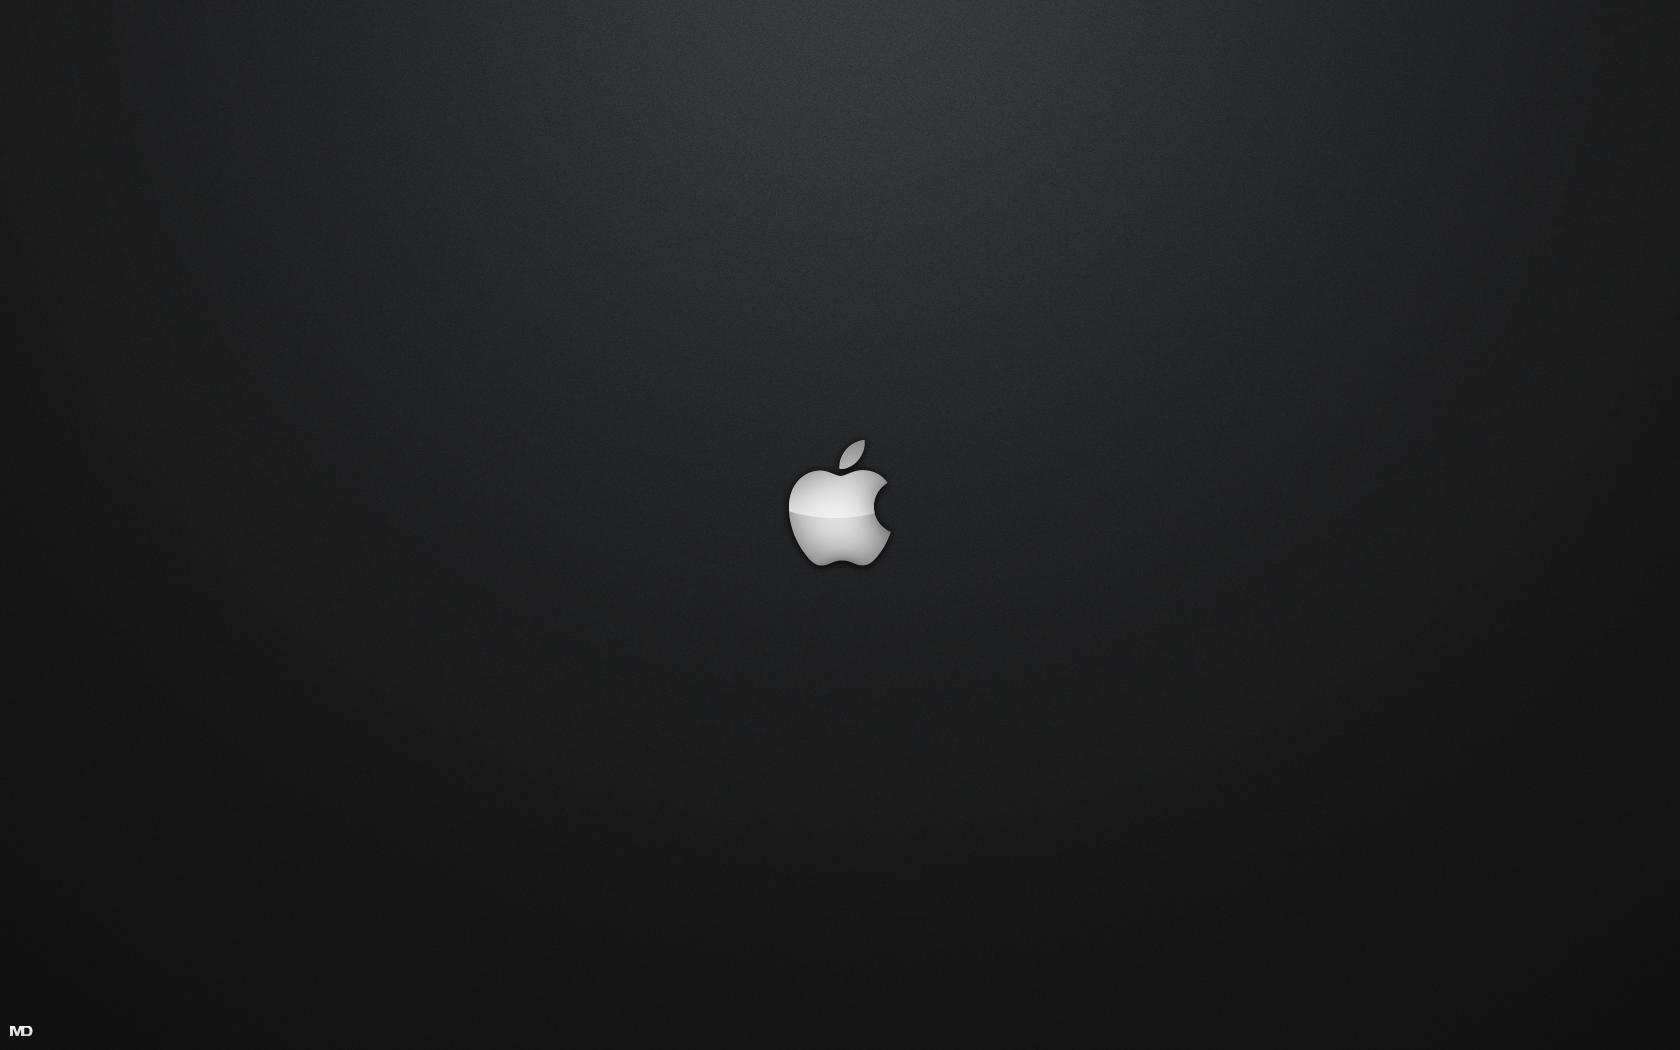 Black Cool Apple Mac Wallpaper Best Wallpaper High resolution